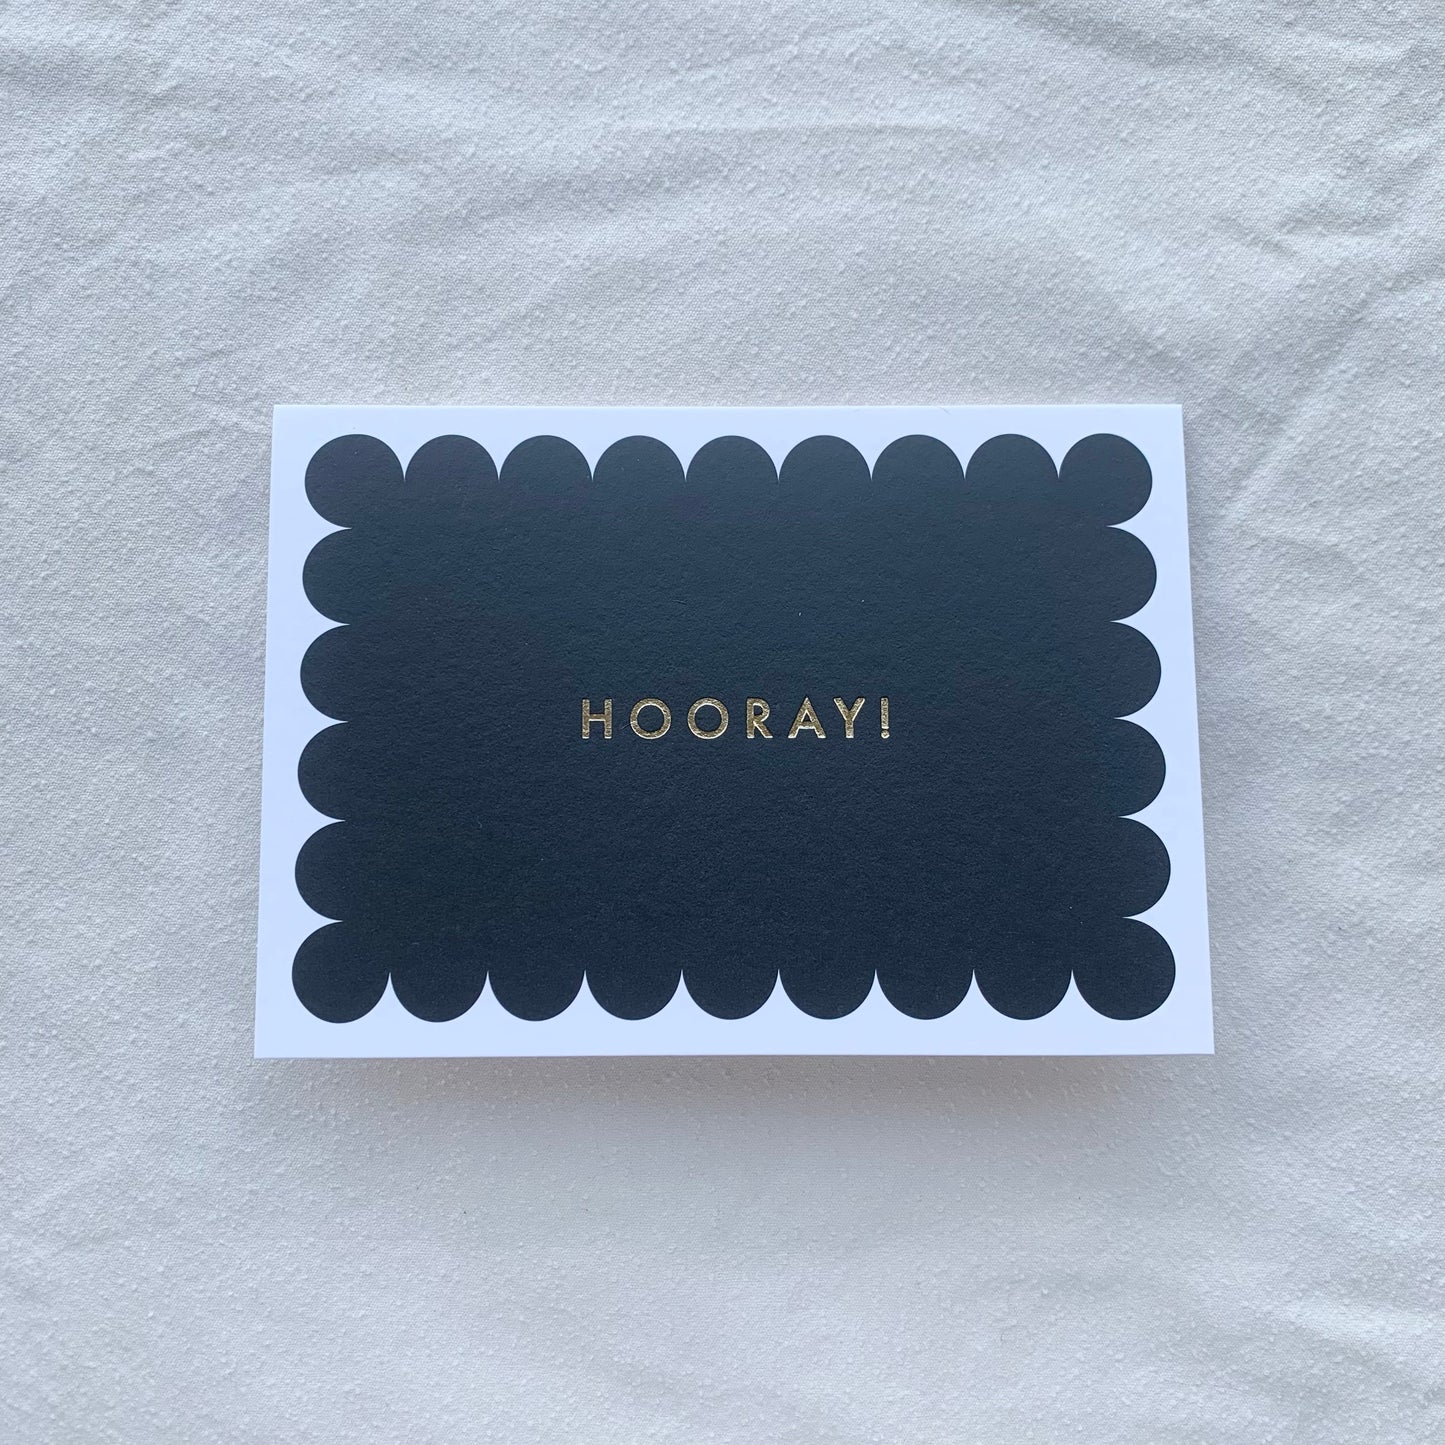 'Hooray' Greetings Card